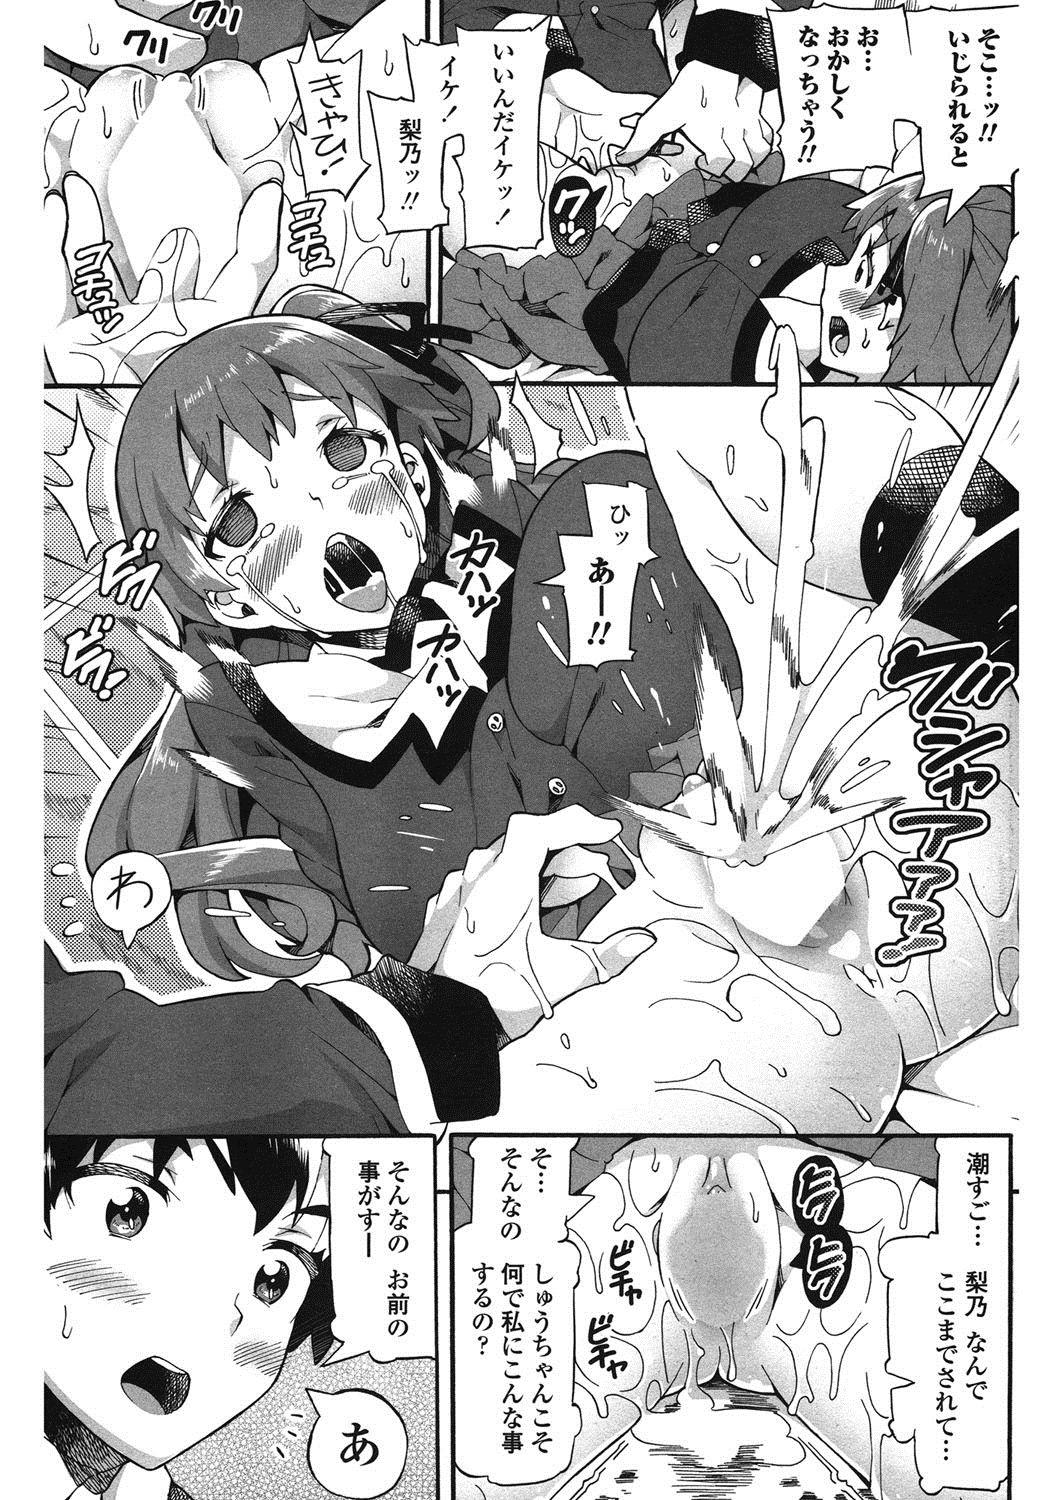 Funny Haiyoru Imouto Flogging - Page 10